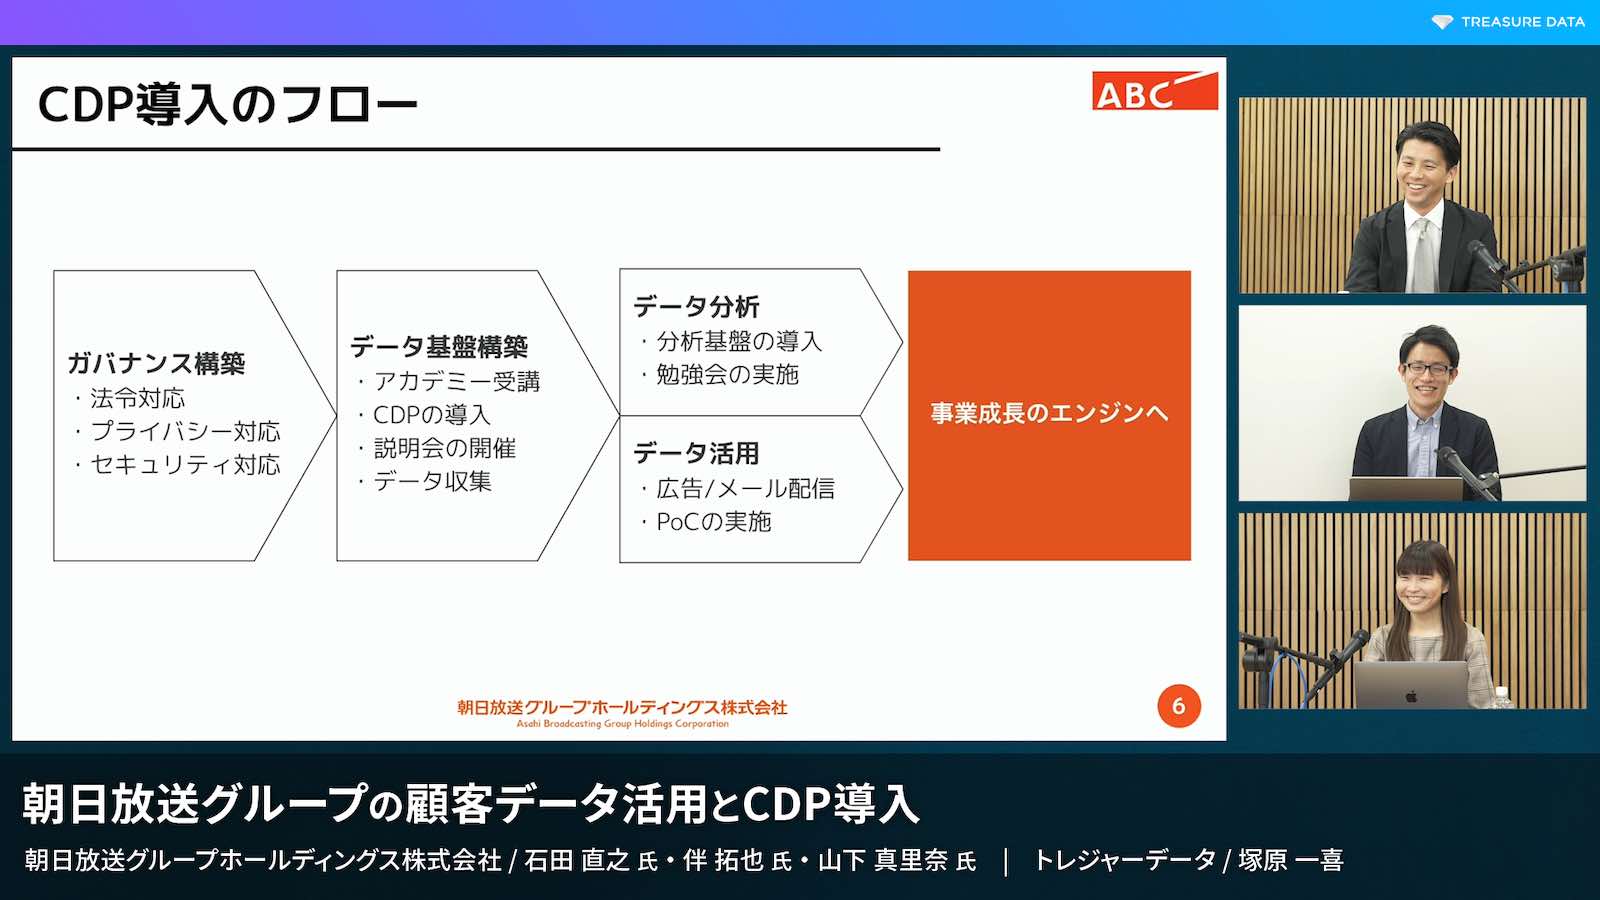 スライド 「CDP導入のフロー」